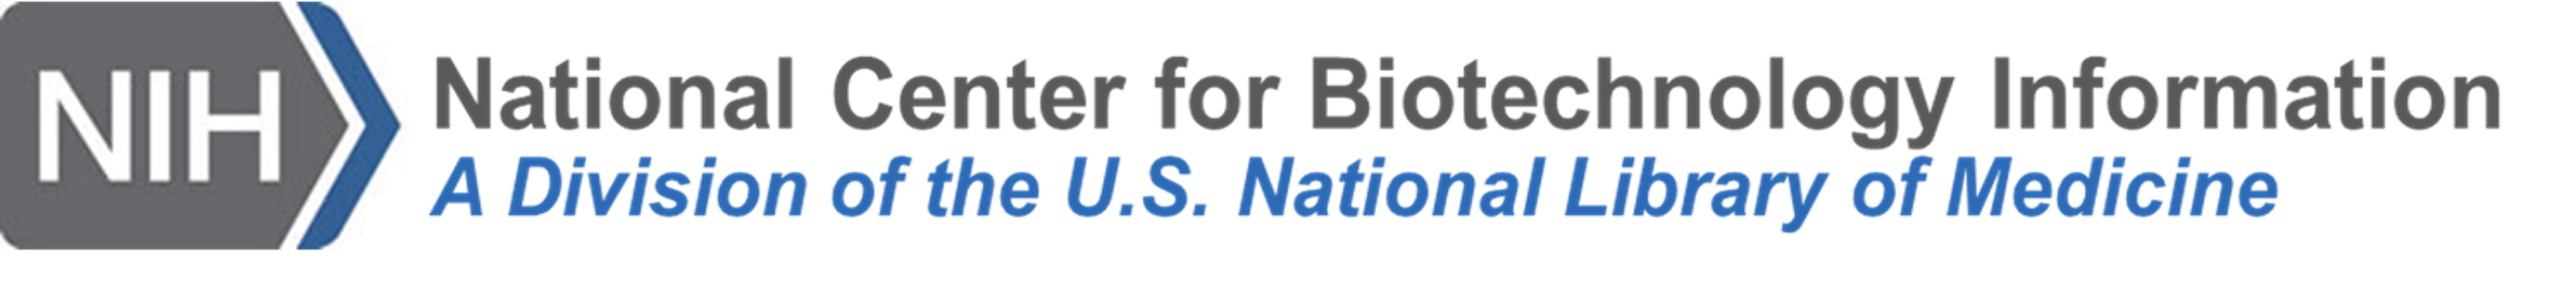 NCBI as a division of NLM logo